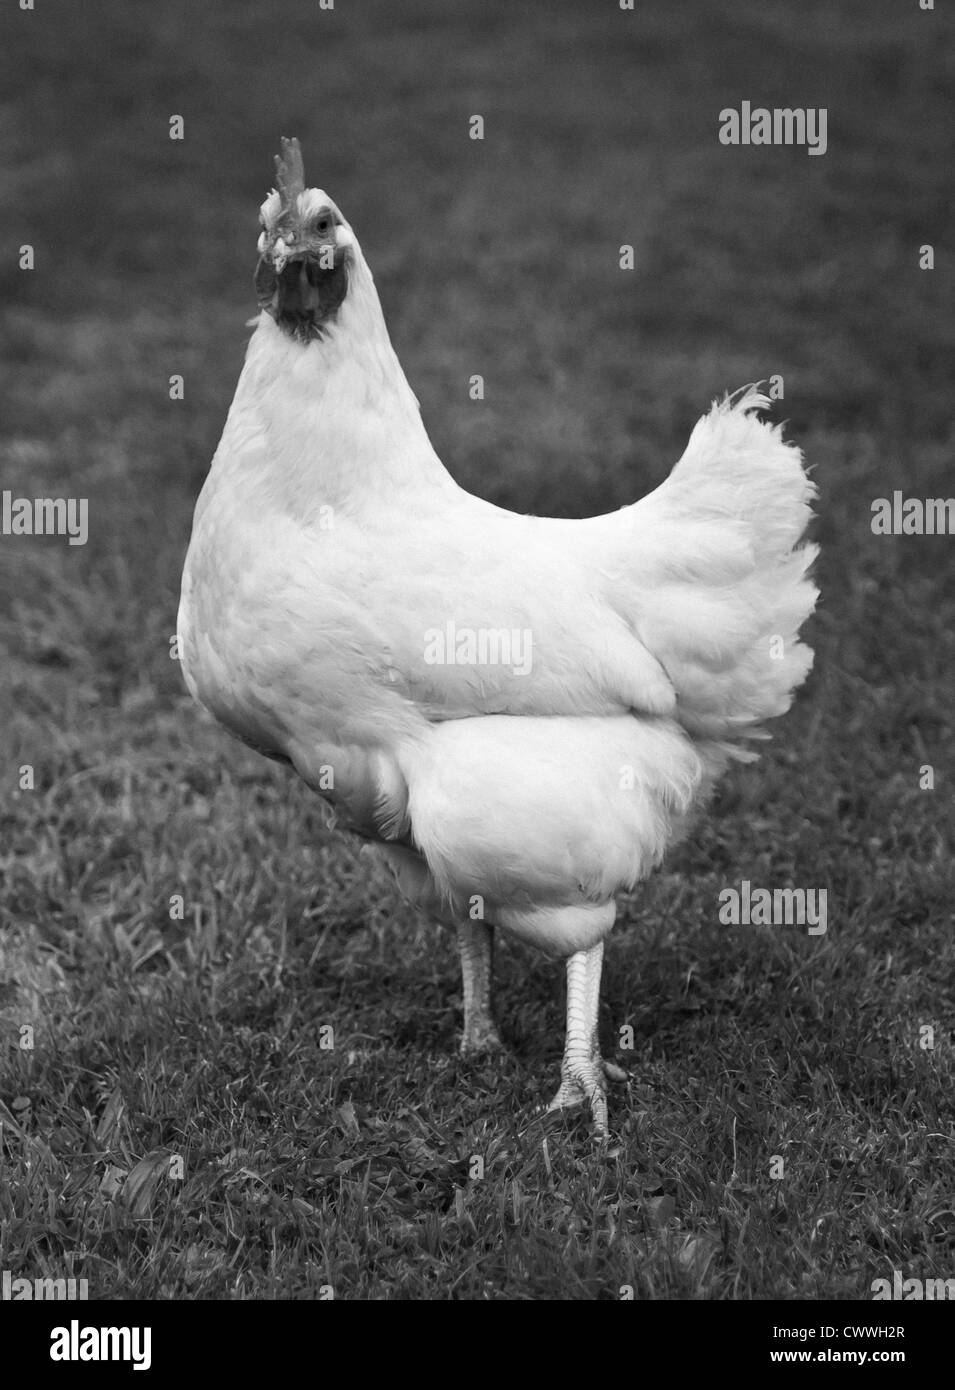 Schwarz / weiß Bild einer Henne Stockfoto